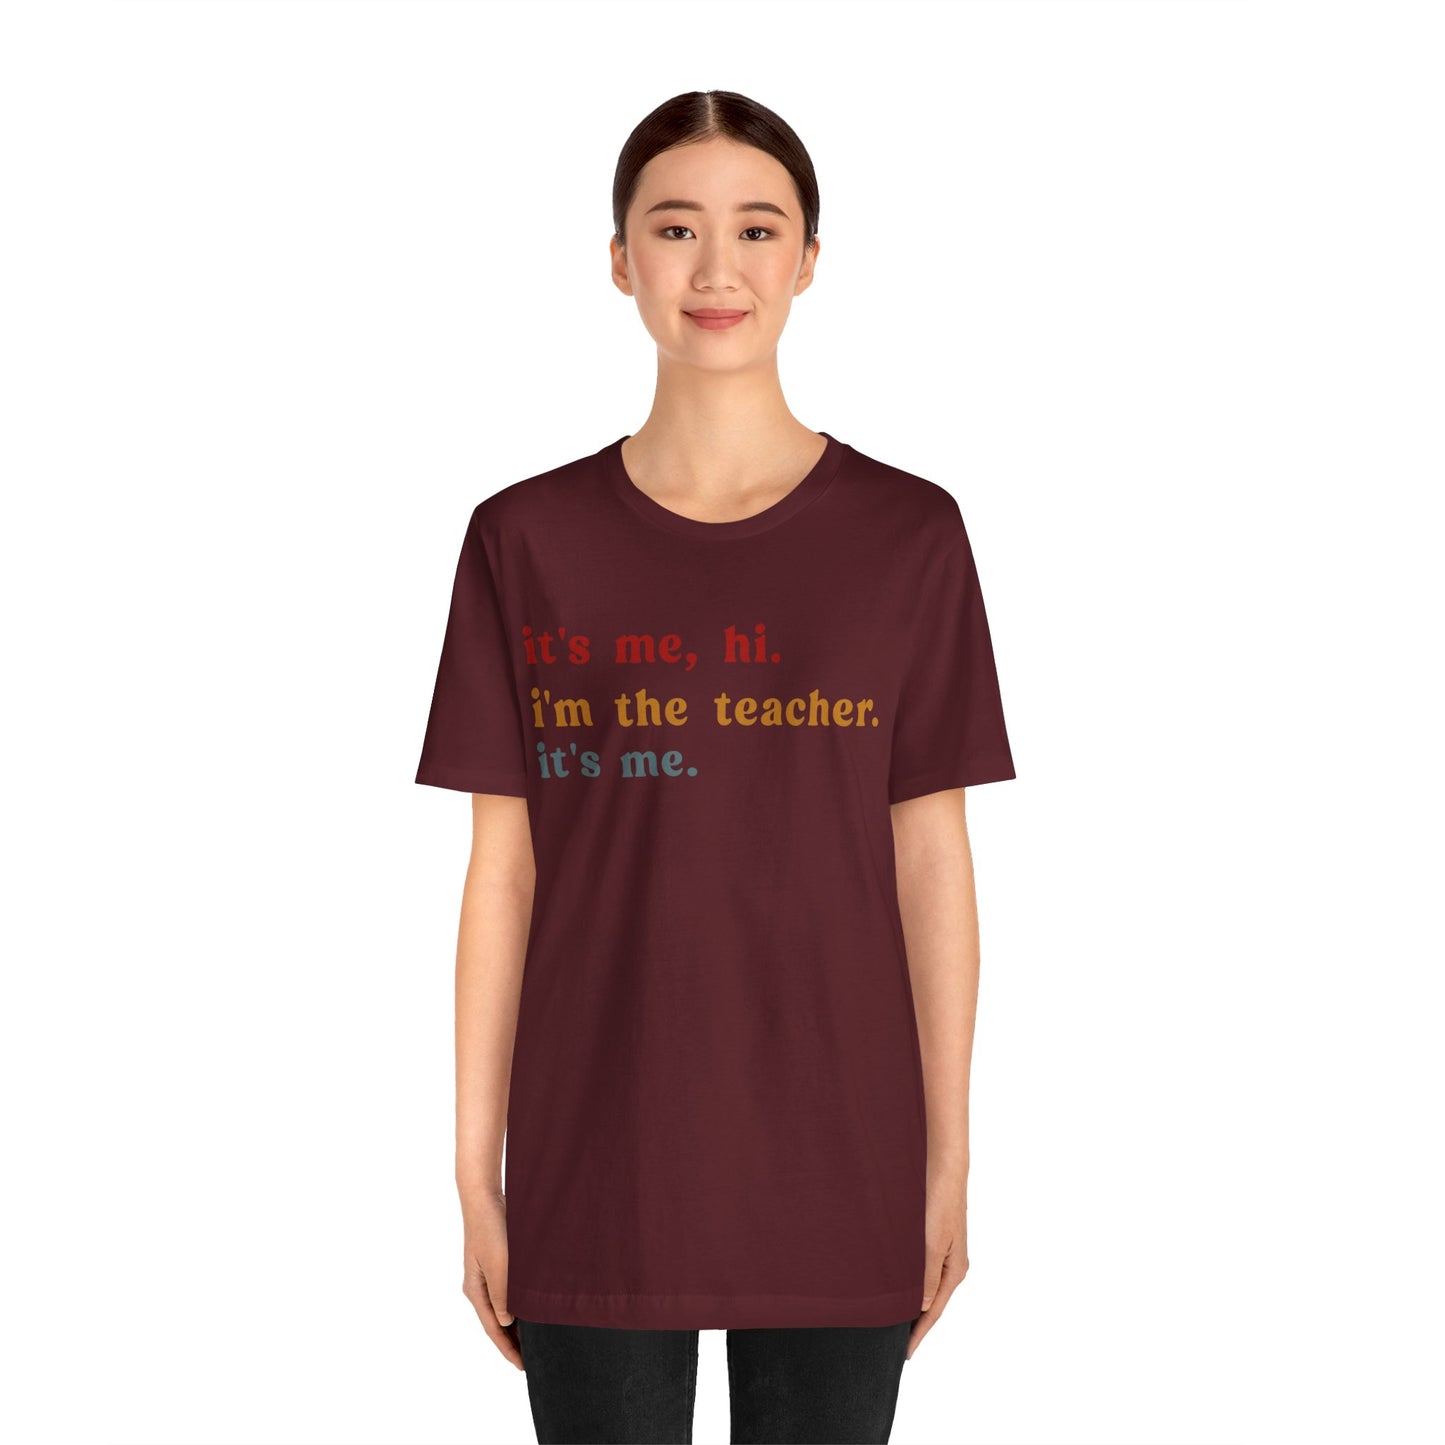 It's Me Hi I'm The Teacher It's Me Shirt, Teacher Gift, Best Teacher Shirt, Elementary Teacher, Teacher Appreciation Shirt, T1150